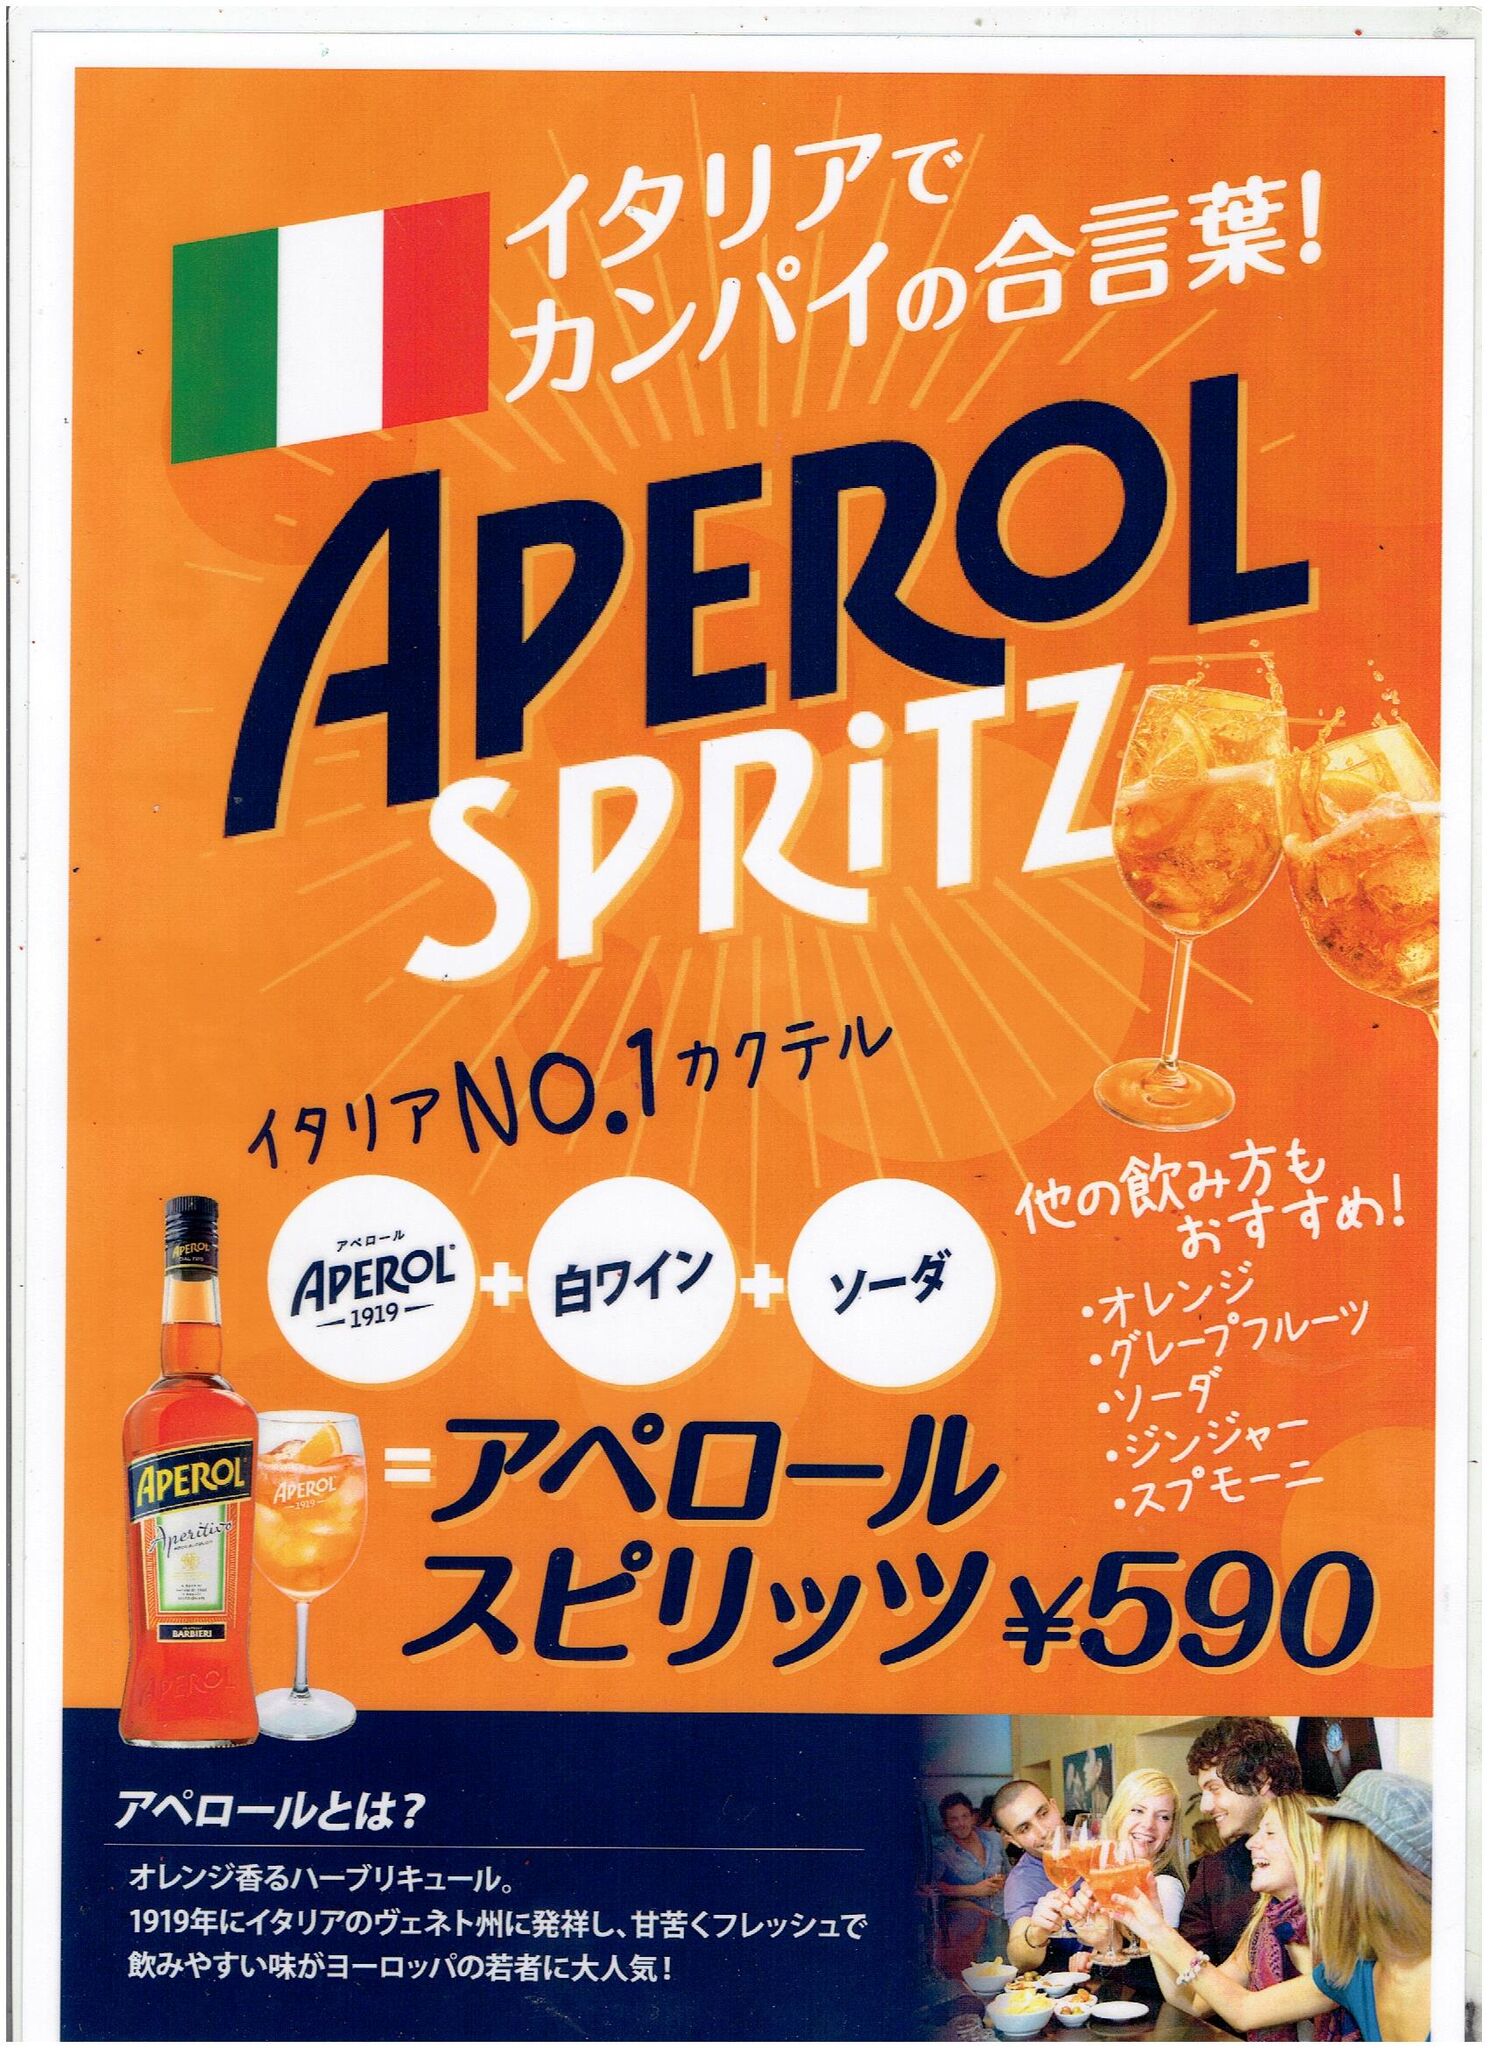 アペロール スピリッツ が当店でも飲めるようになりました 公式 金のイタリアン 熟成肉と窯焼きピザのイタリアンバル